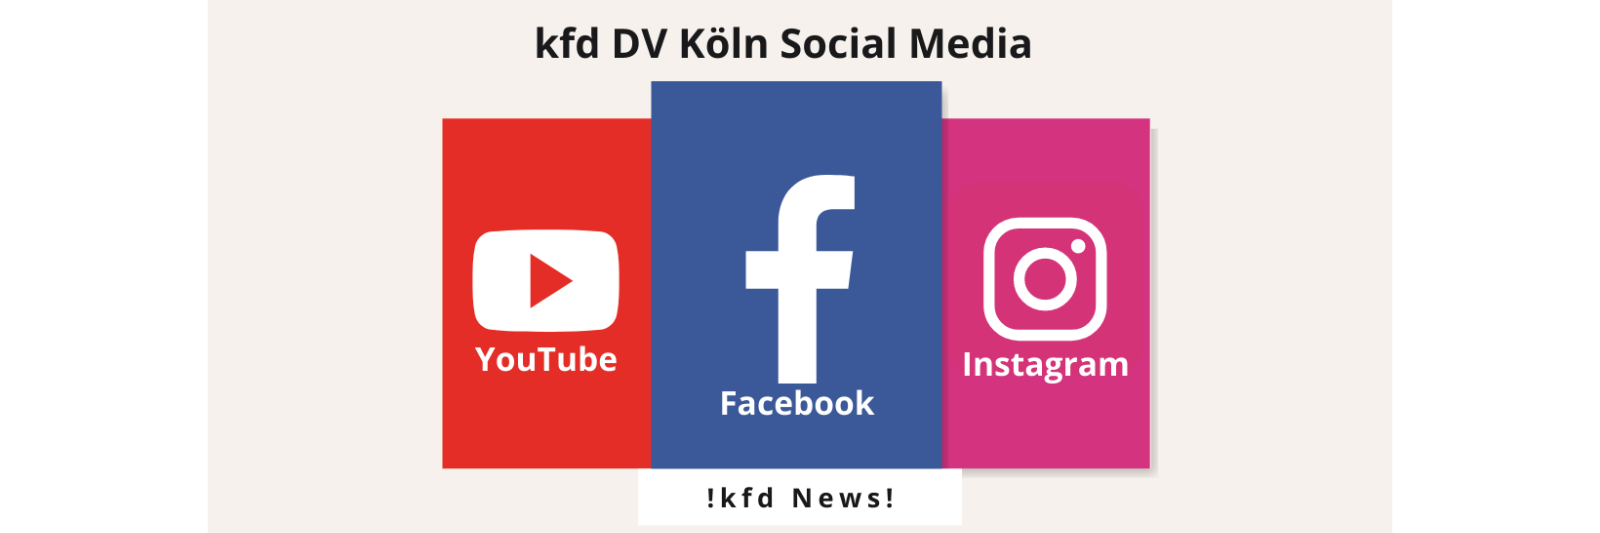 kfd DV Köln & Social Media